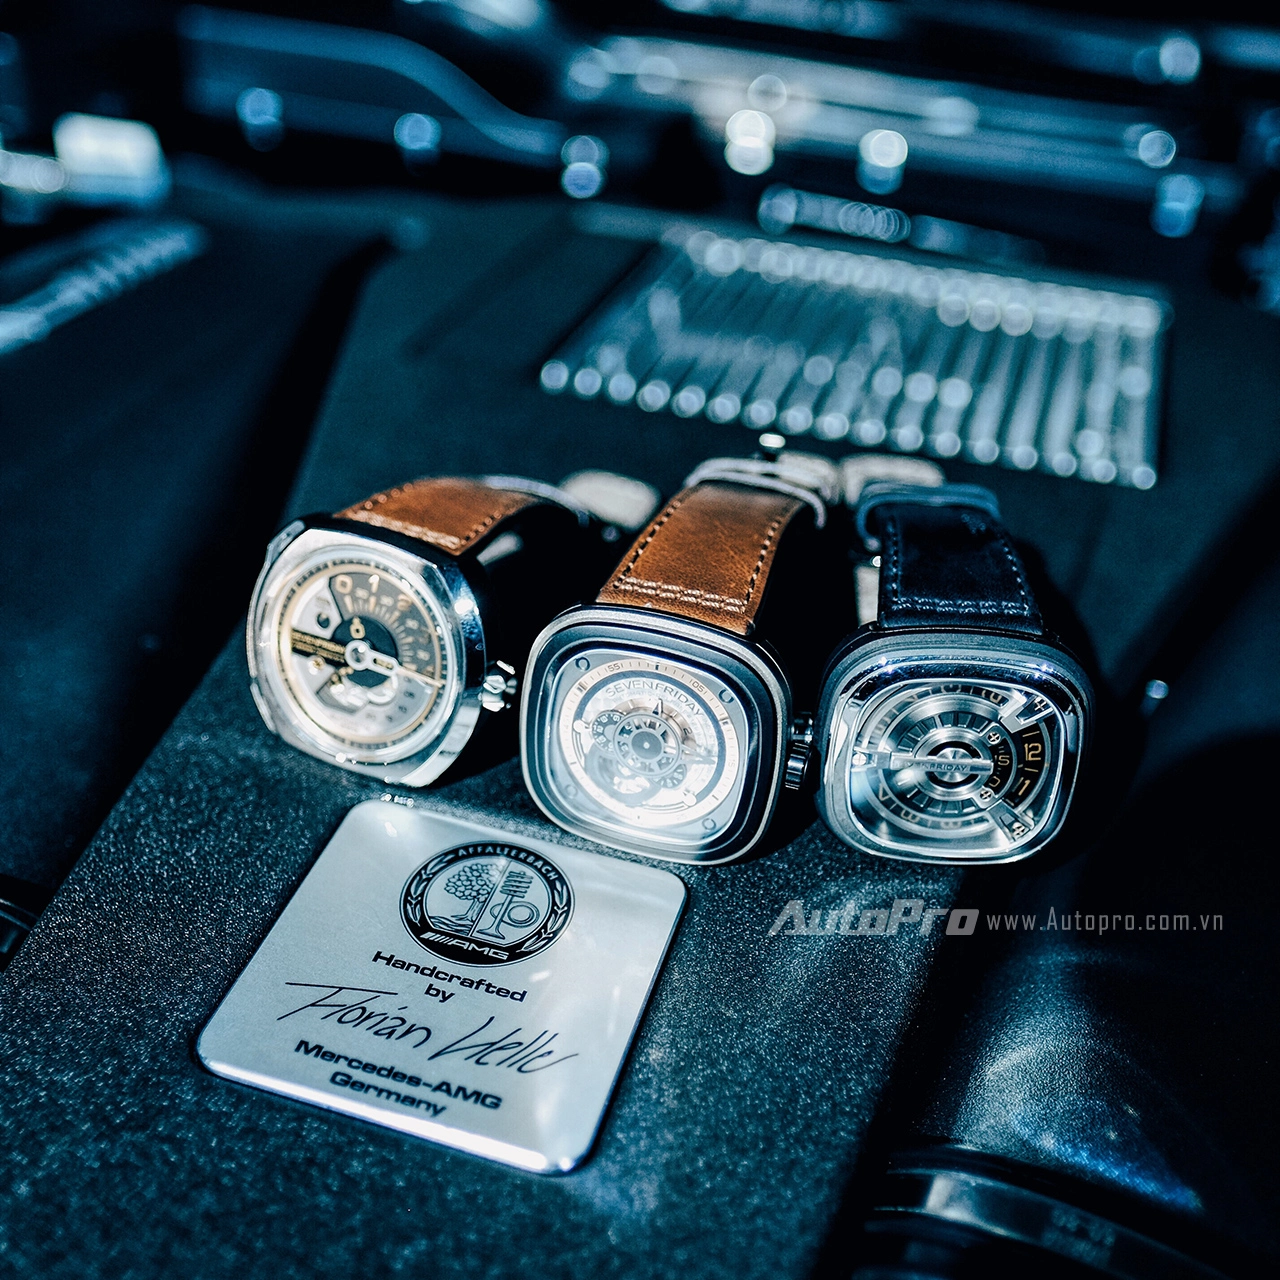 
Bộ ba đồng hồ thuộc dòng V, P, M của SevenFriday khoe sắc bên động cơ V8 của ông vua địa hình Mercedes-Benz G63 AMG.
